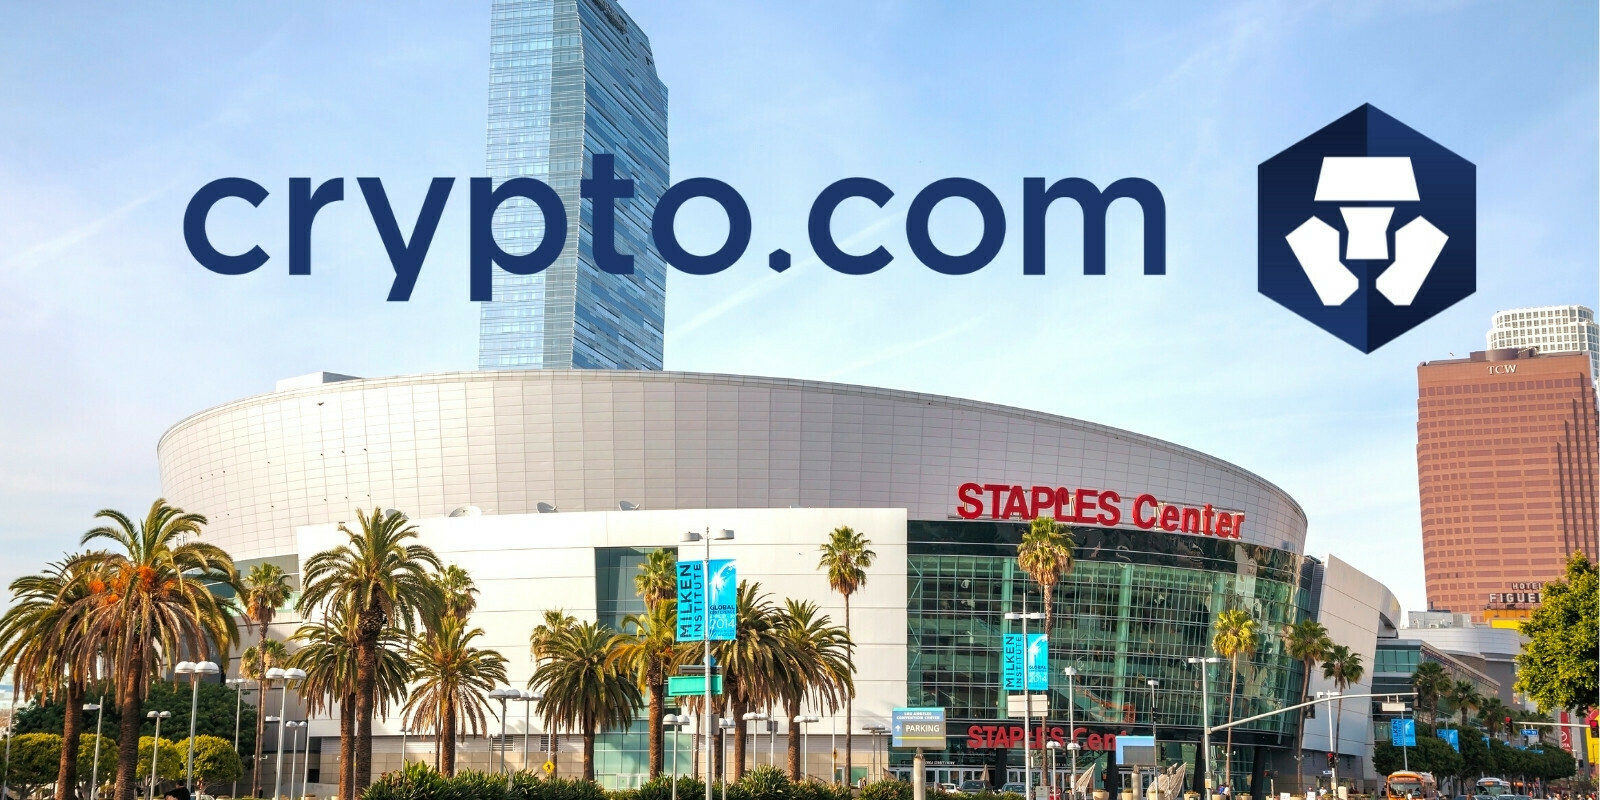 Crypto.com signe un partenariat de 700 millions de dollars avec le Staples Center de Los Angeles